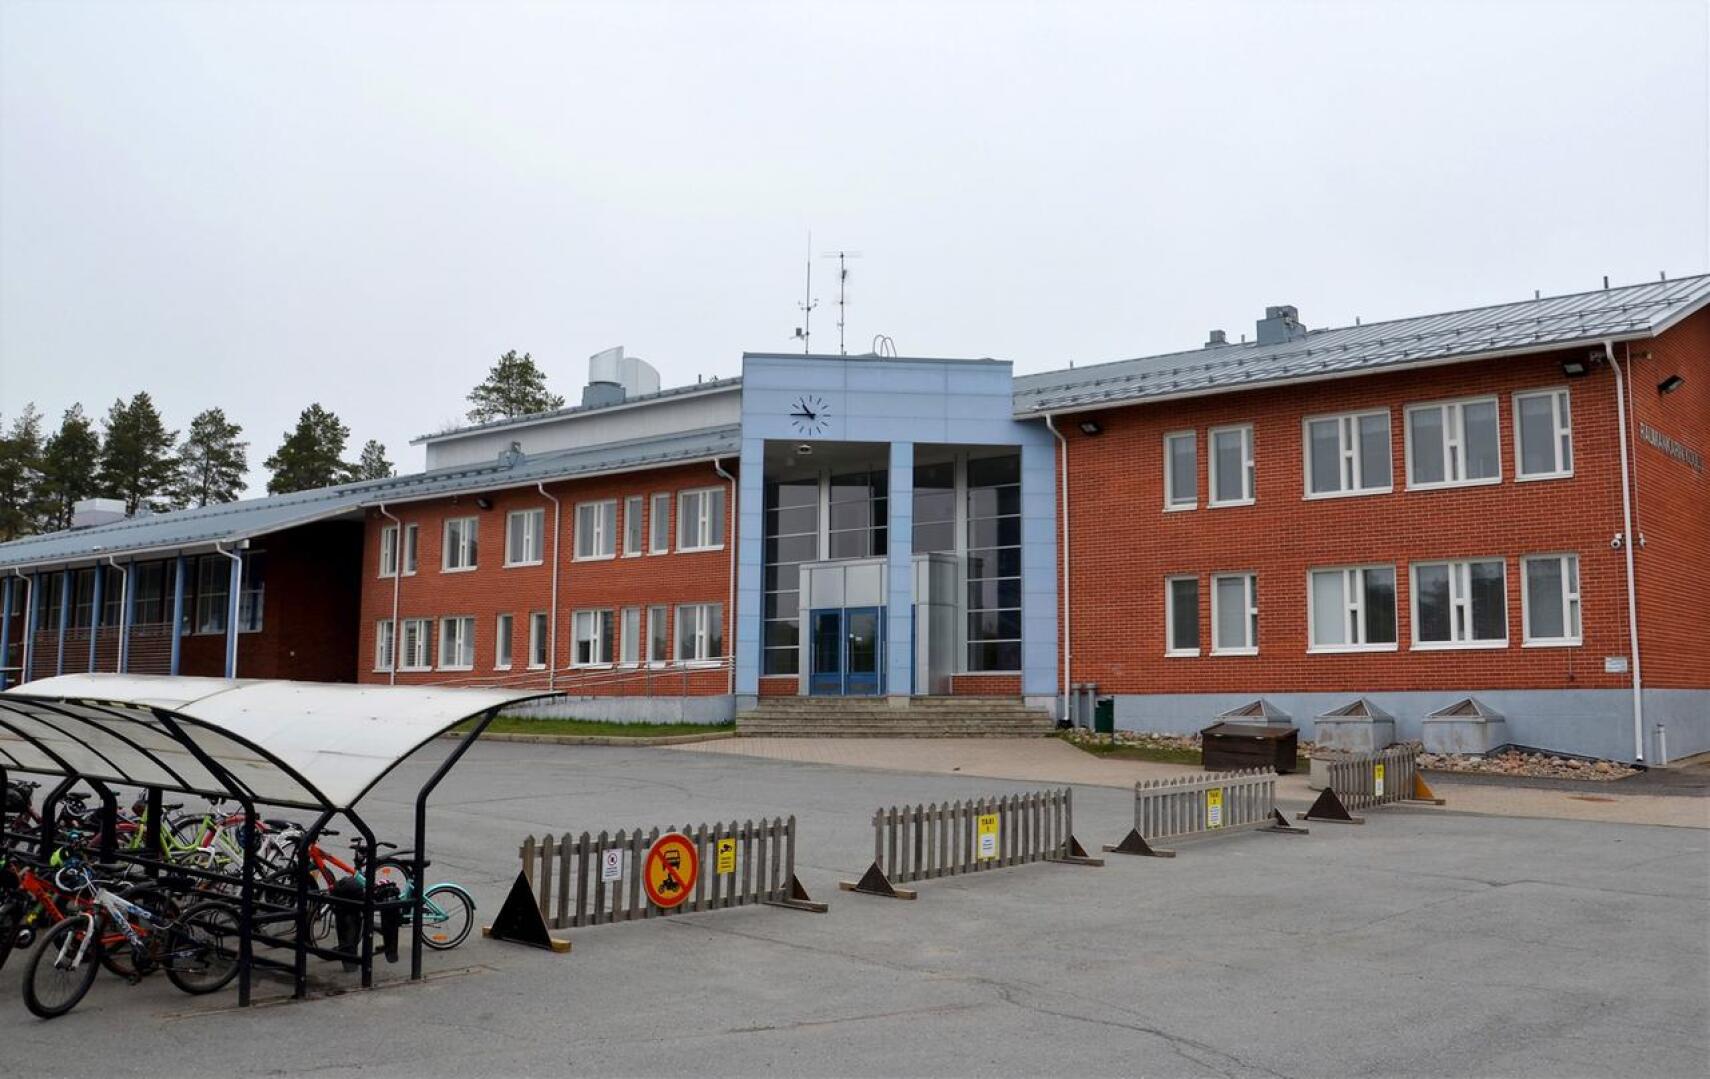 Erityisopettajan vakanssia ollaan siirtämässä pois Raumankarin koululta.